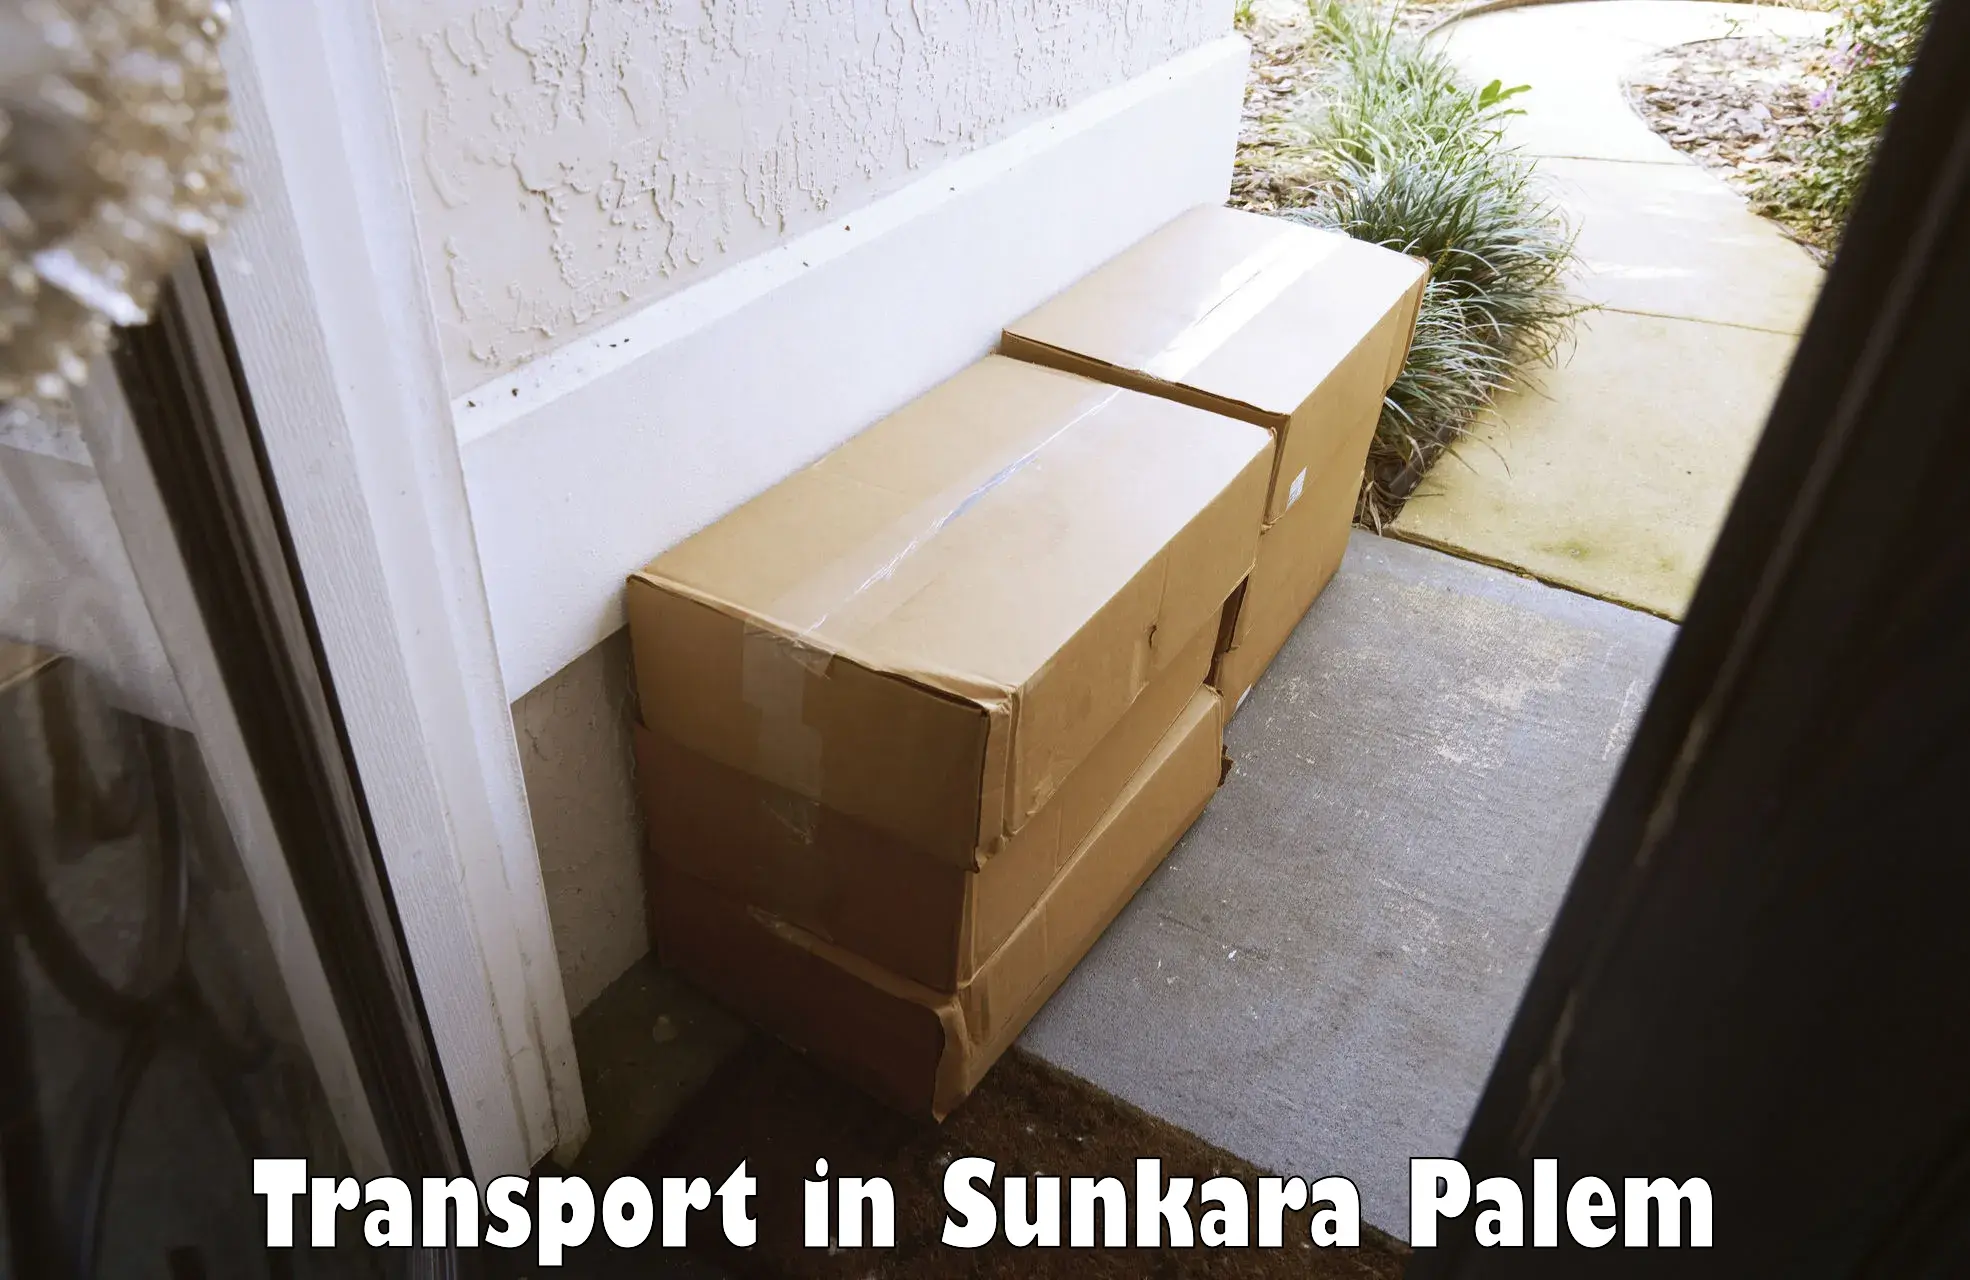 Material transport services in Sunkara Palem